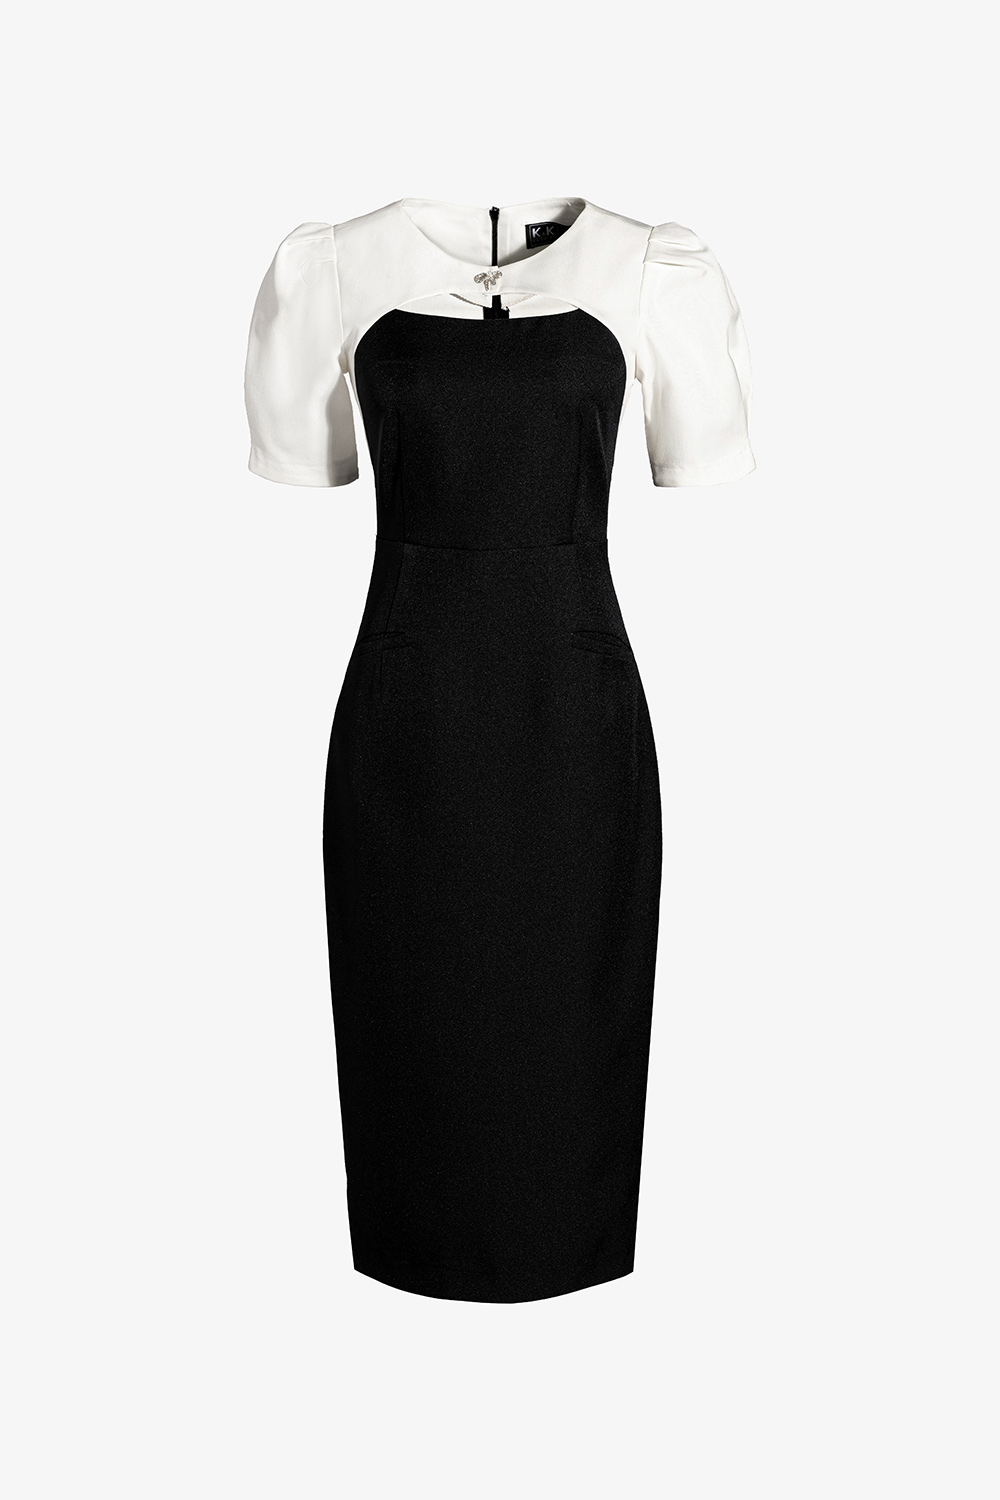 Đầm công sở ôm body đen phối trắng KK161-31 | Thời trang công sở K&K ...